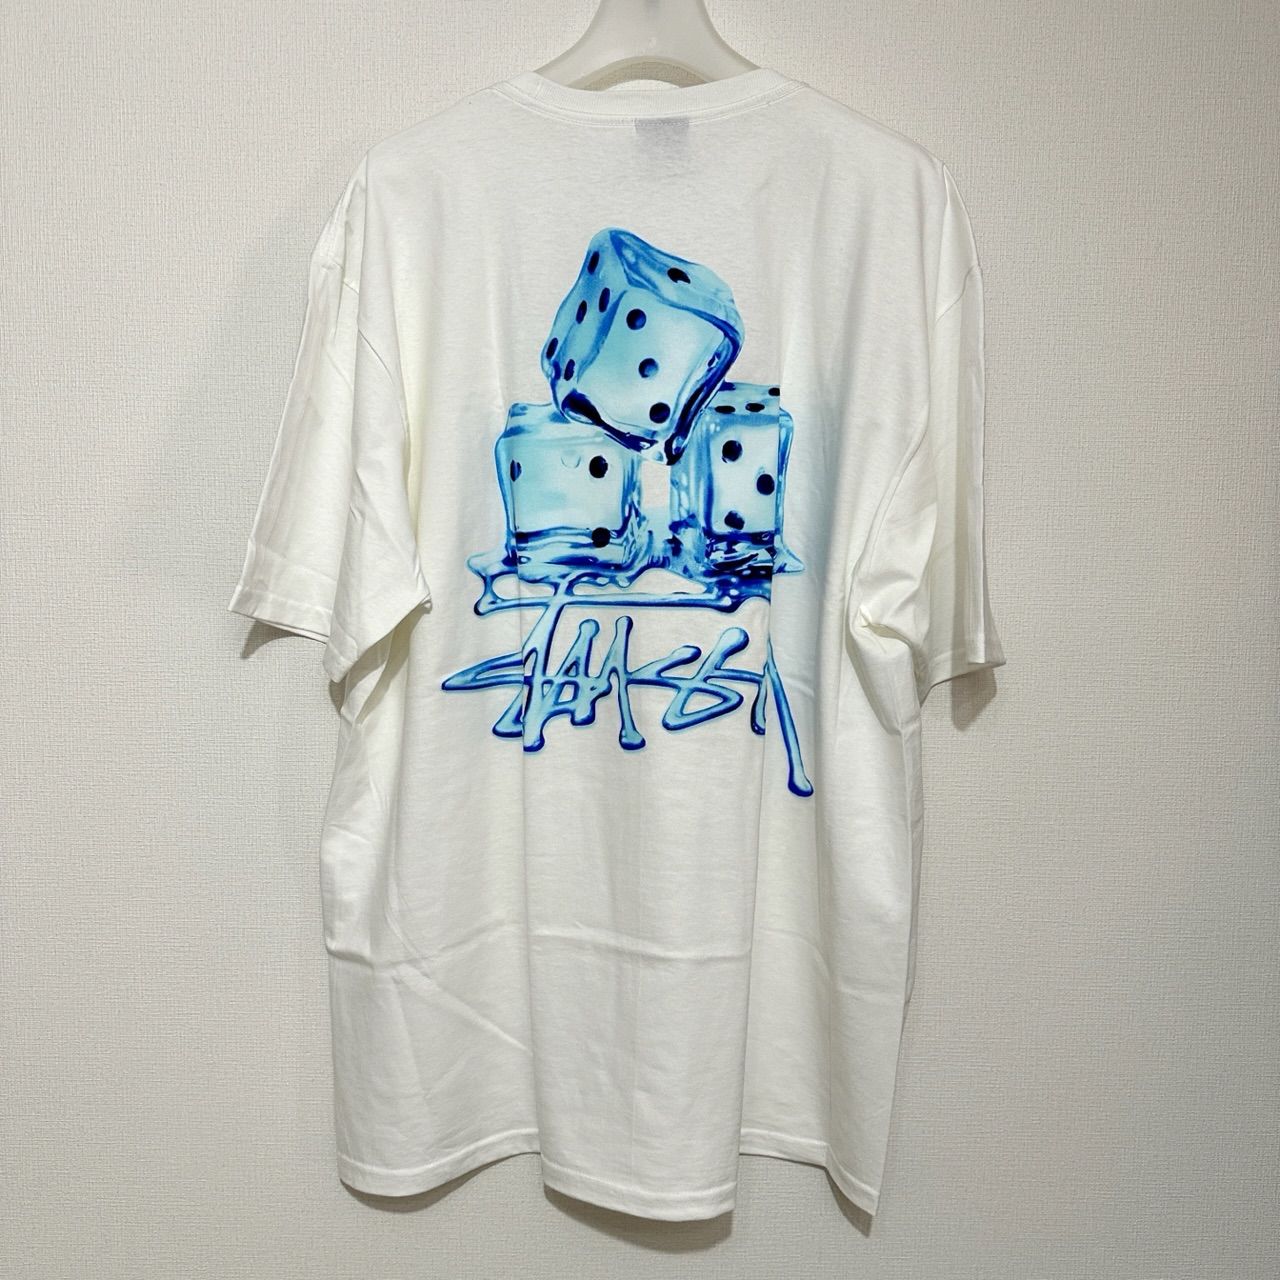 【SALE中！】ステューシー ダイス サイコロ Tシャツ XL 白 ホワイト.